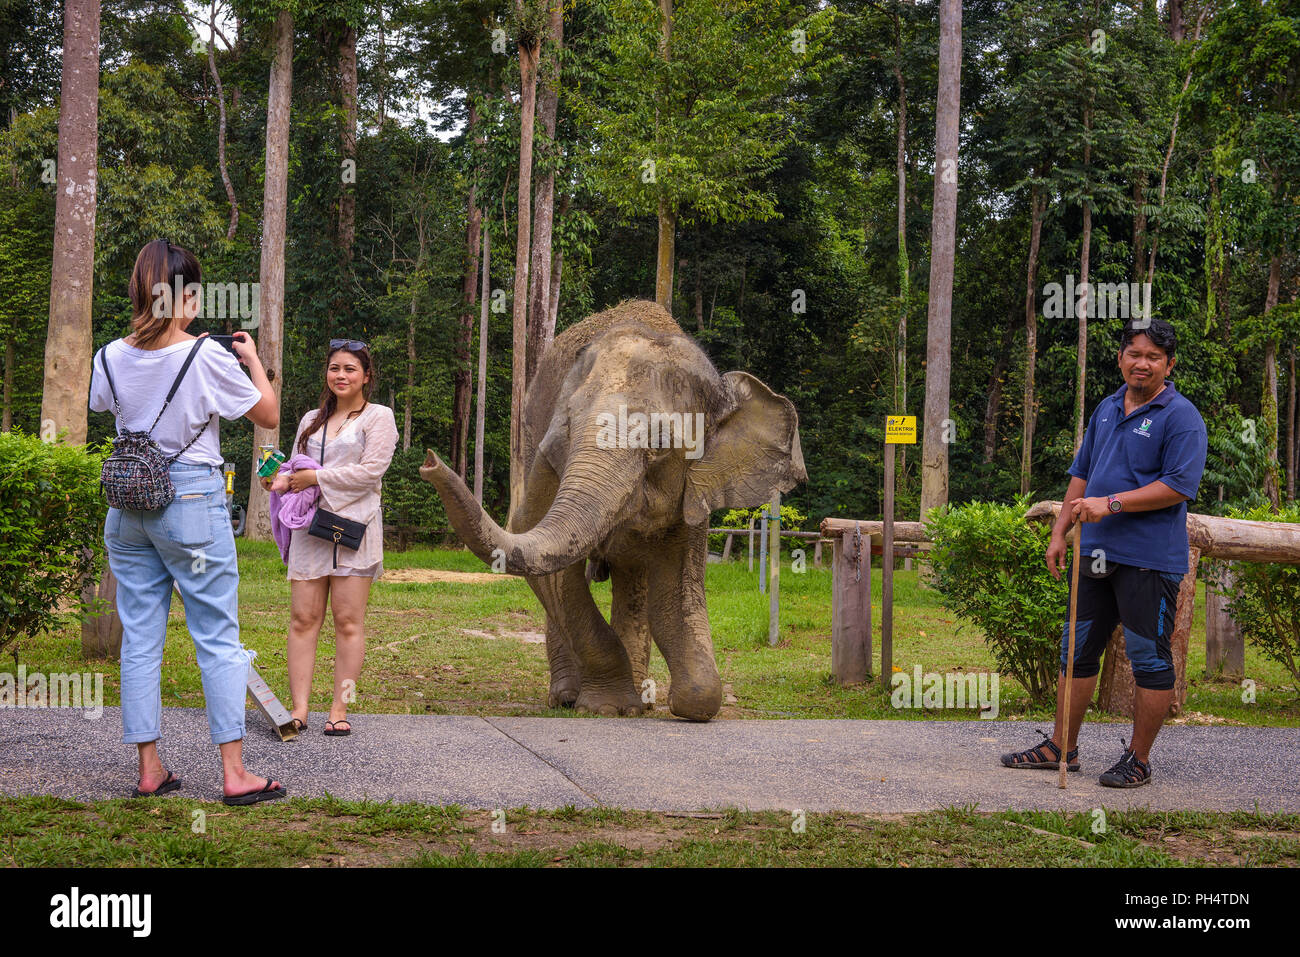 Les touristes de prendre des photos avec un éléphant indien Banque D'Images